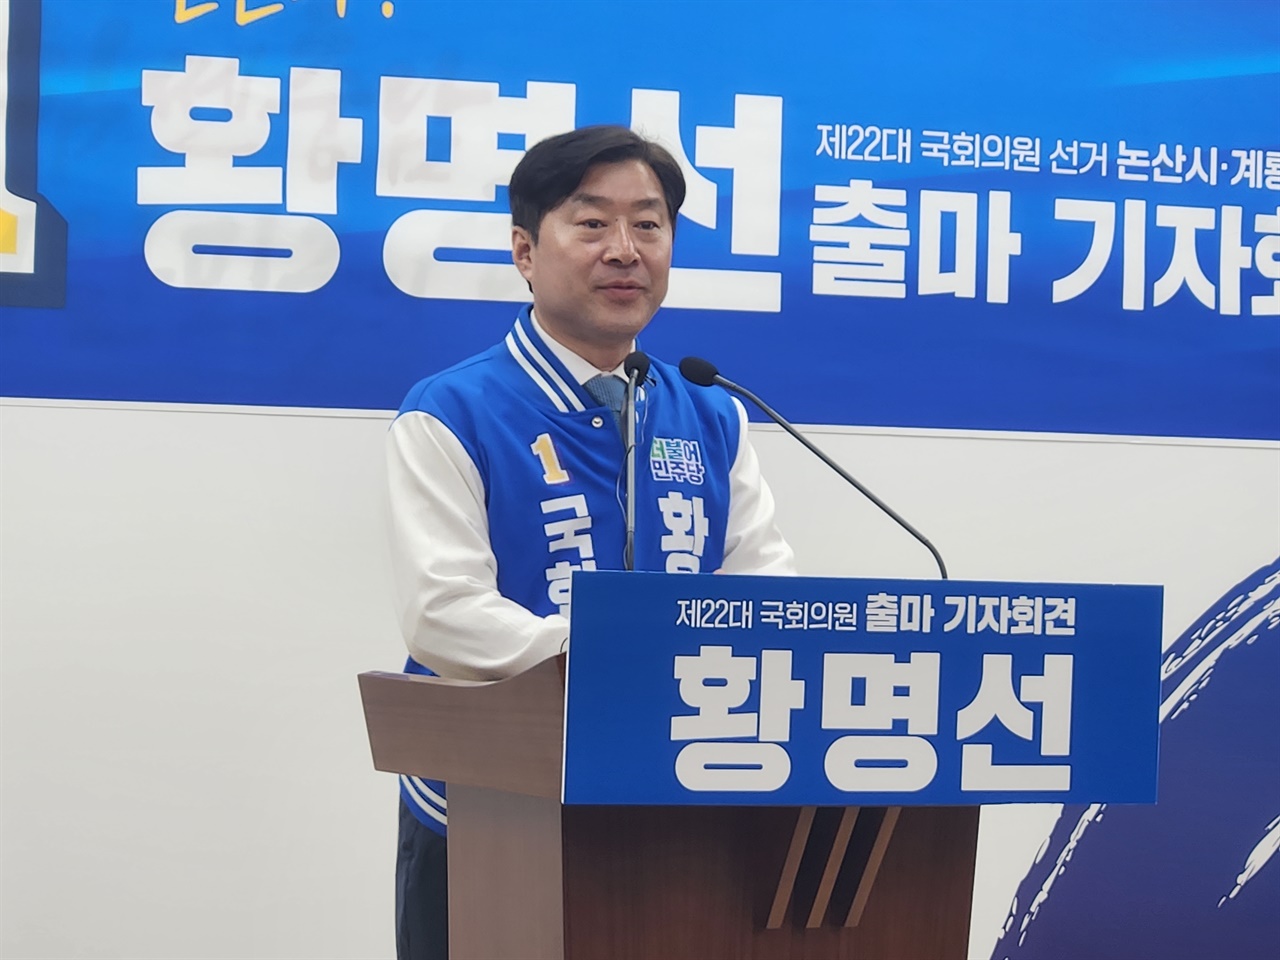 기자회견 중인 황명선 충남 논산계룡금산 예비후보